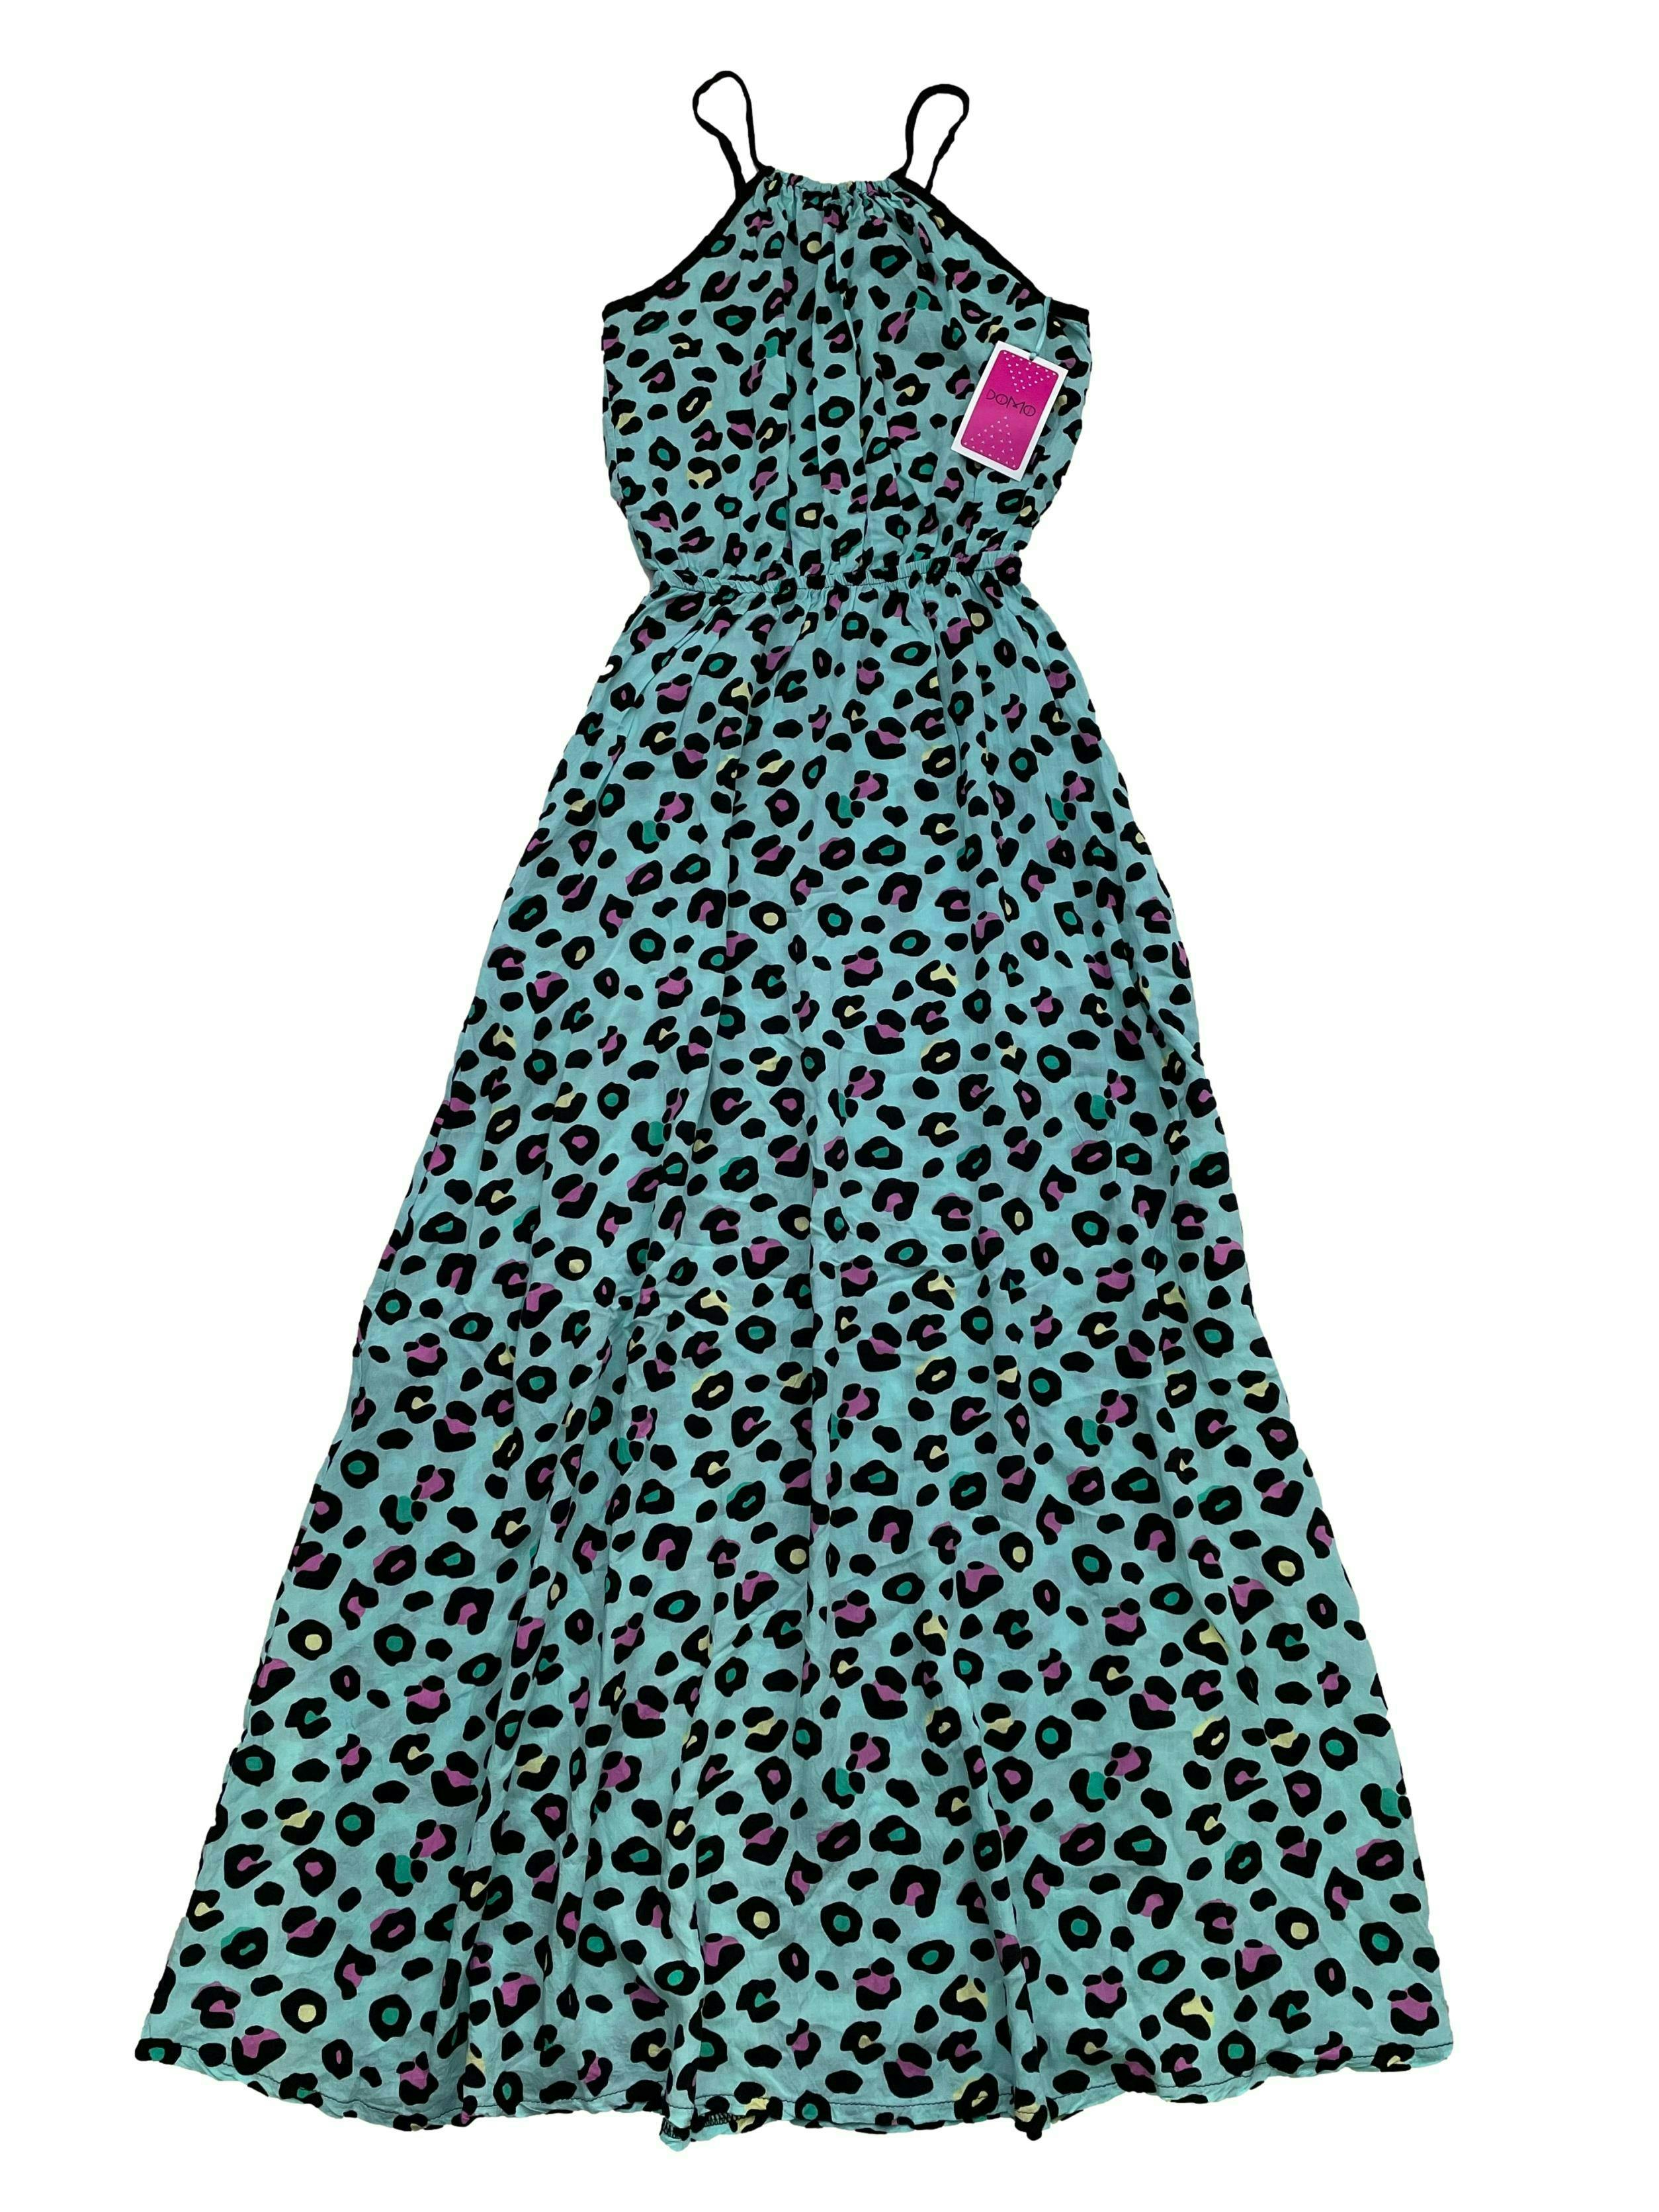 Vestido largo turquesa con estampado leopardo en colore, se amarra en la espalda, elástico en cintura y bolsillos en falda. Busto 96cm, Largo 135cm Nuevo con etiqueta.